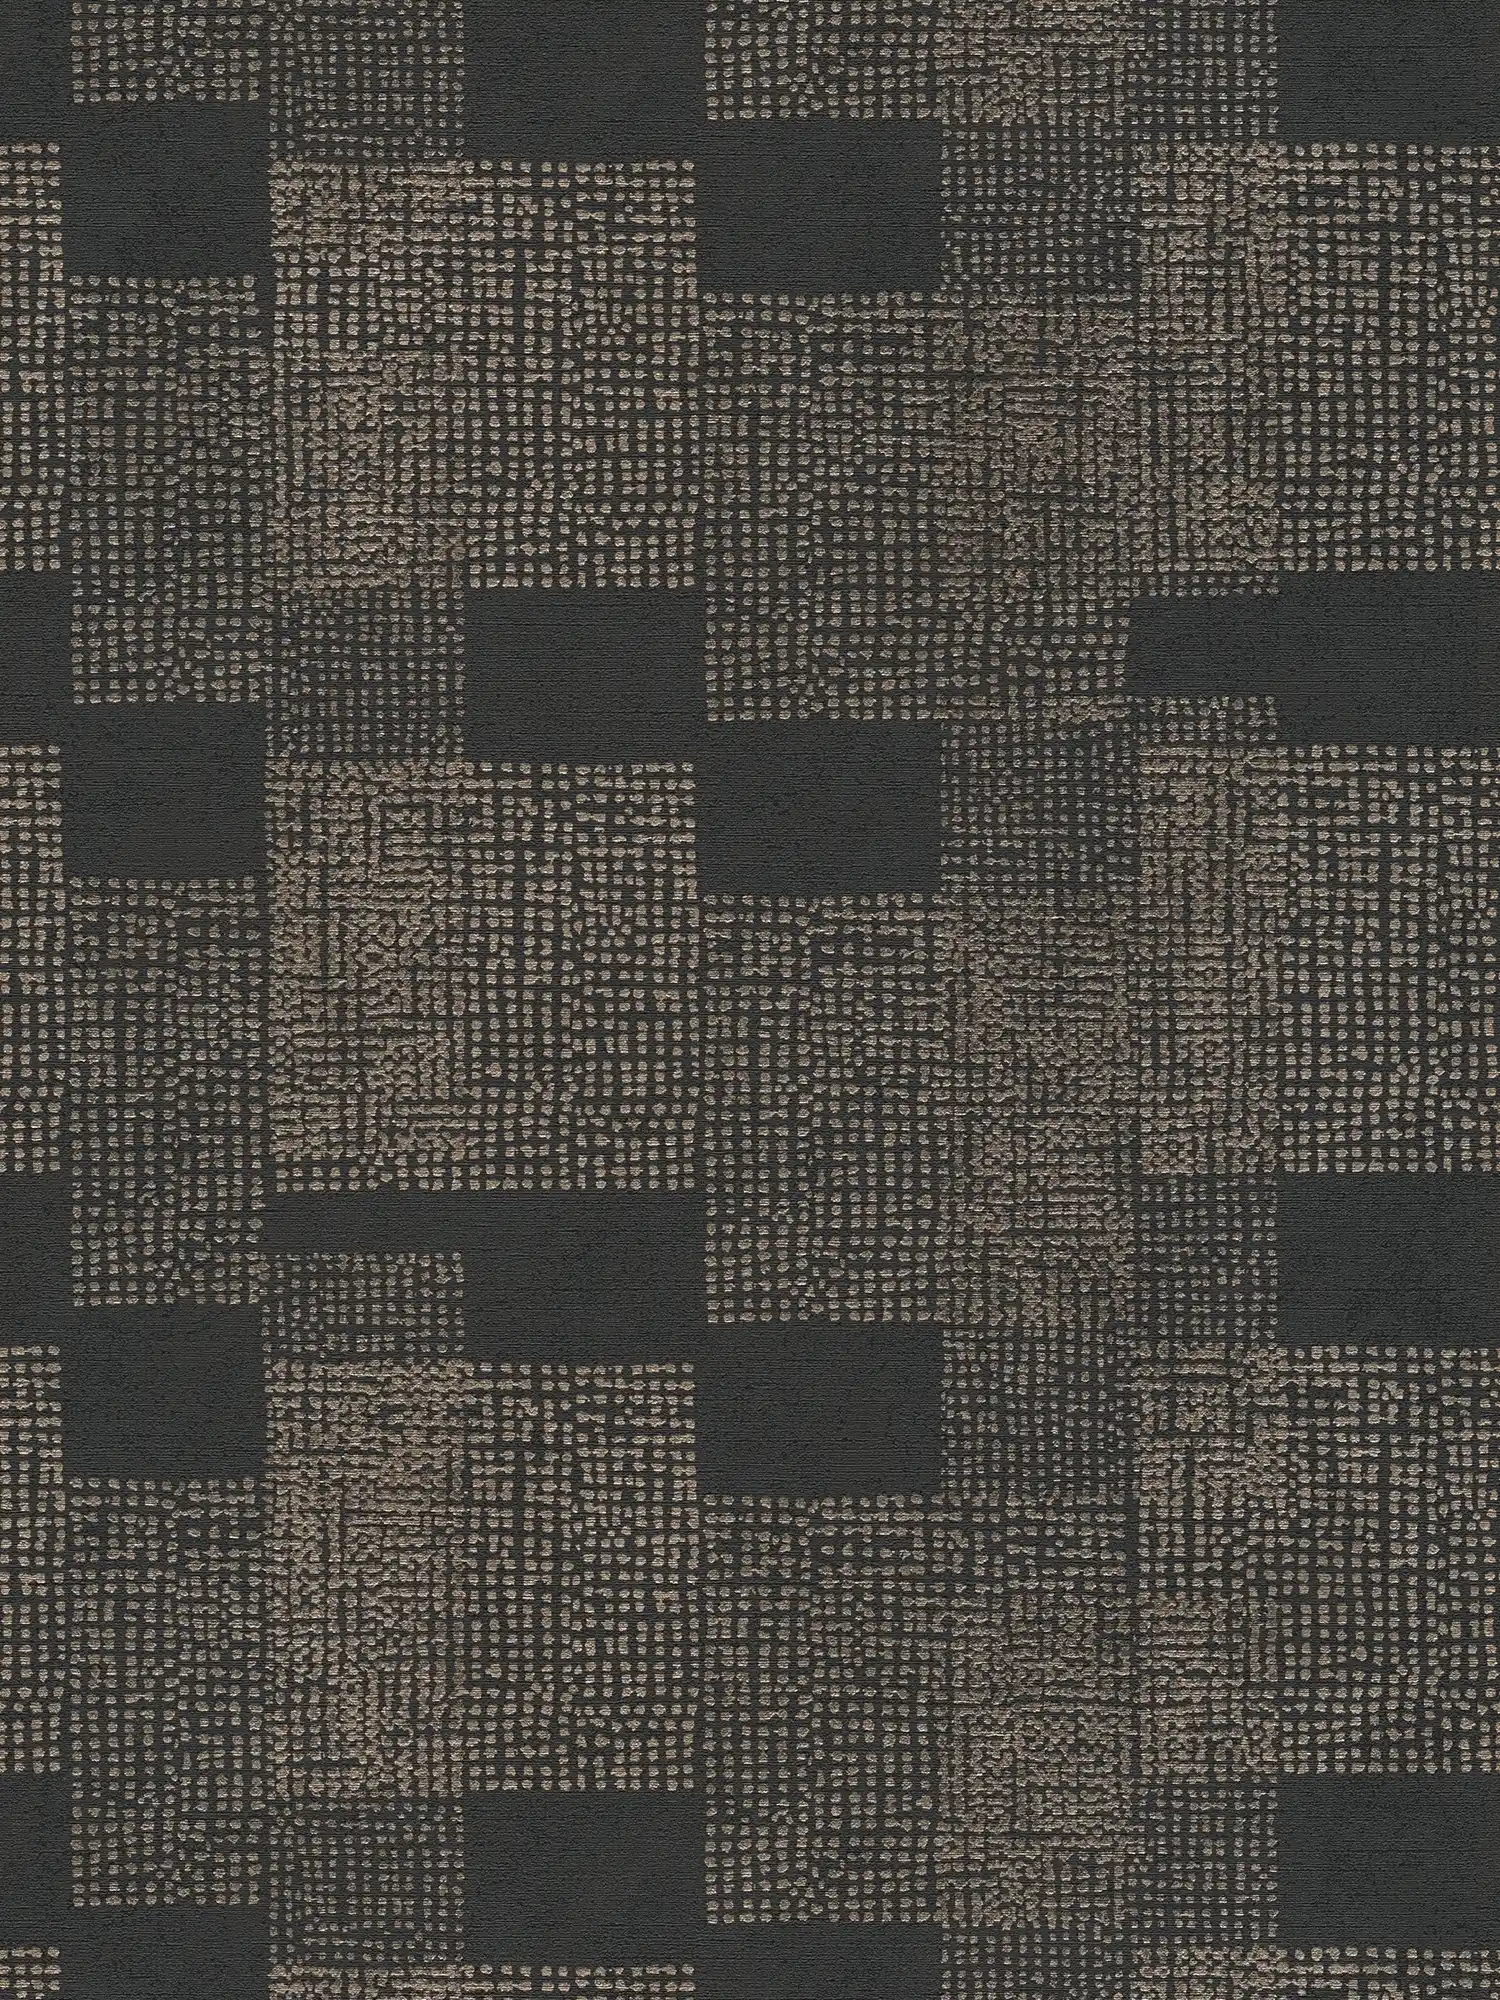 Patroonbehang ethno design - zwart, grijs, metallic
